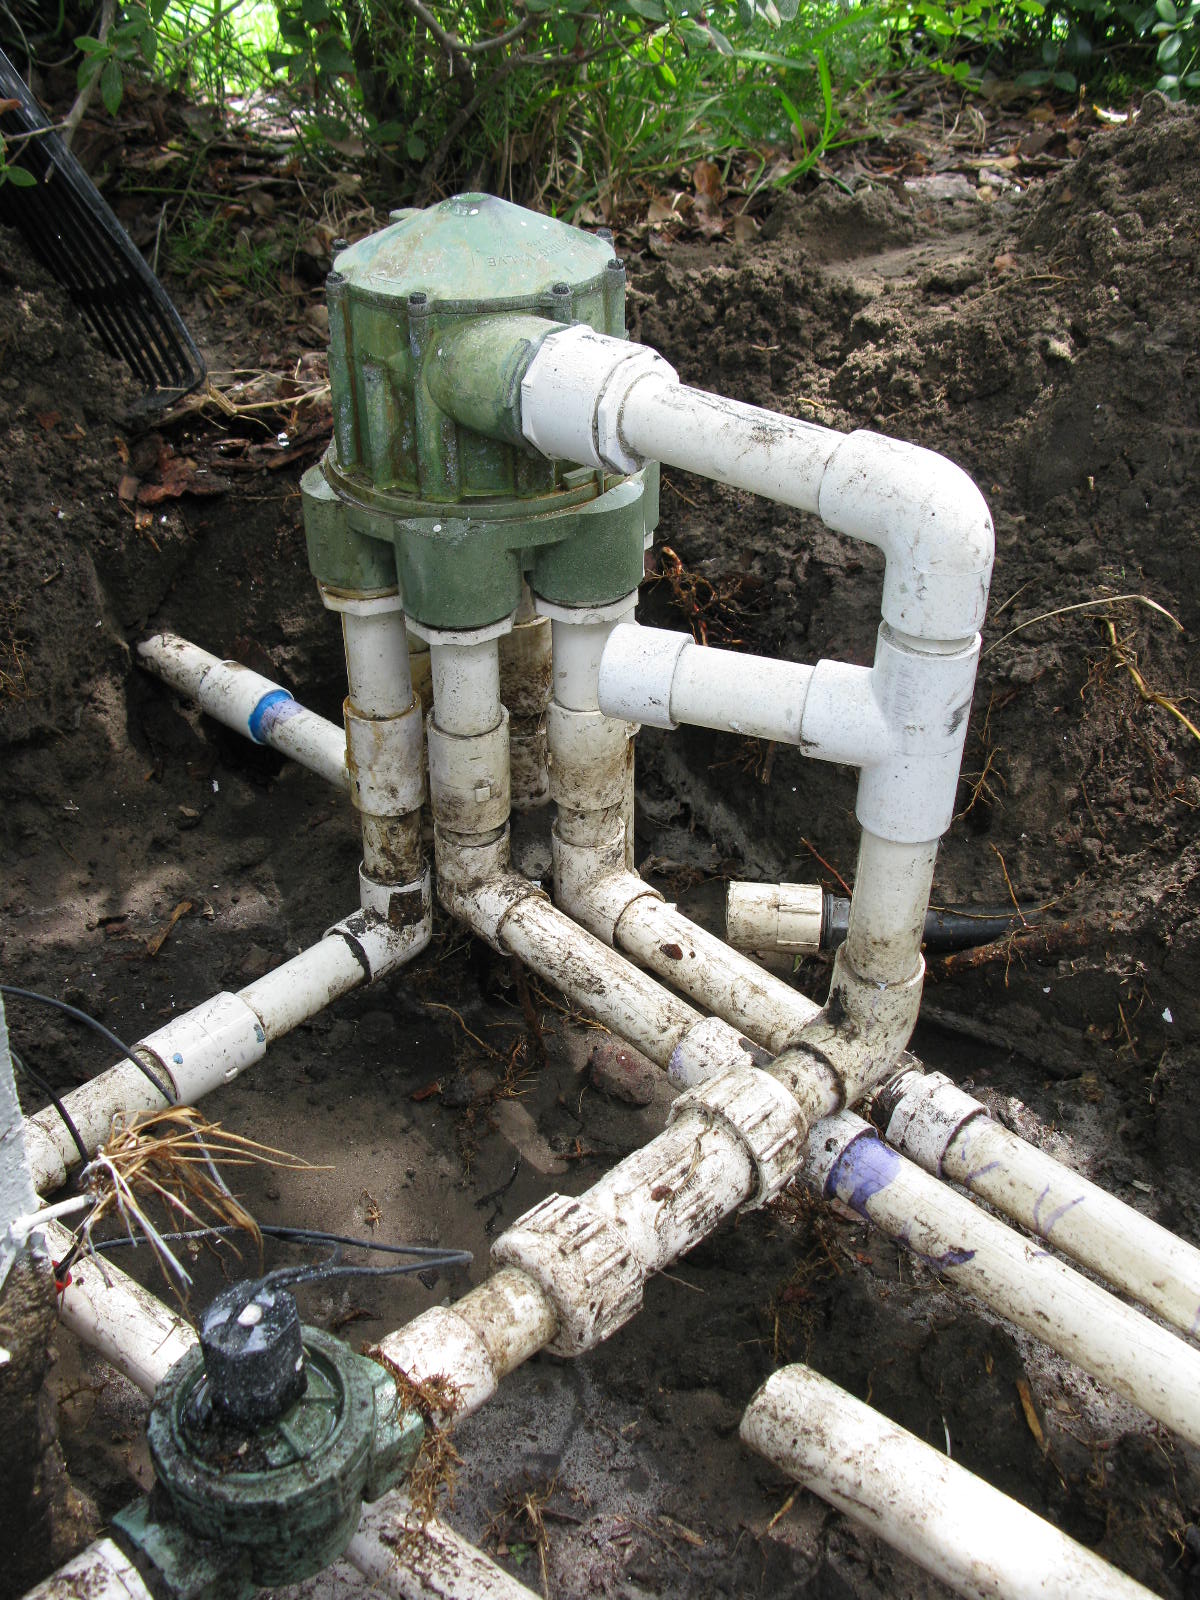 http://www.pro-sprinkler.com/wp-content/uploads/2011/07/irrigation-indexing-valve-for-sprinkler-system.jpg